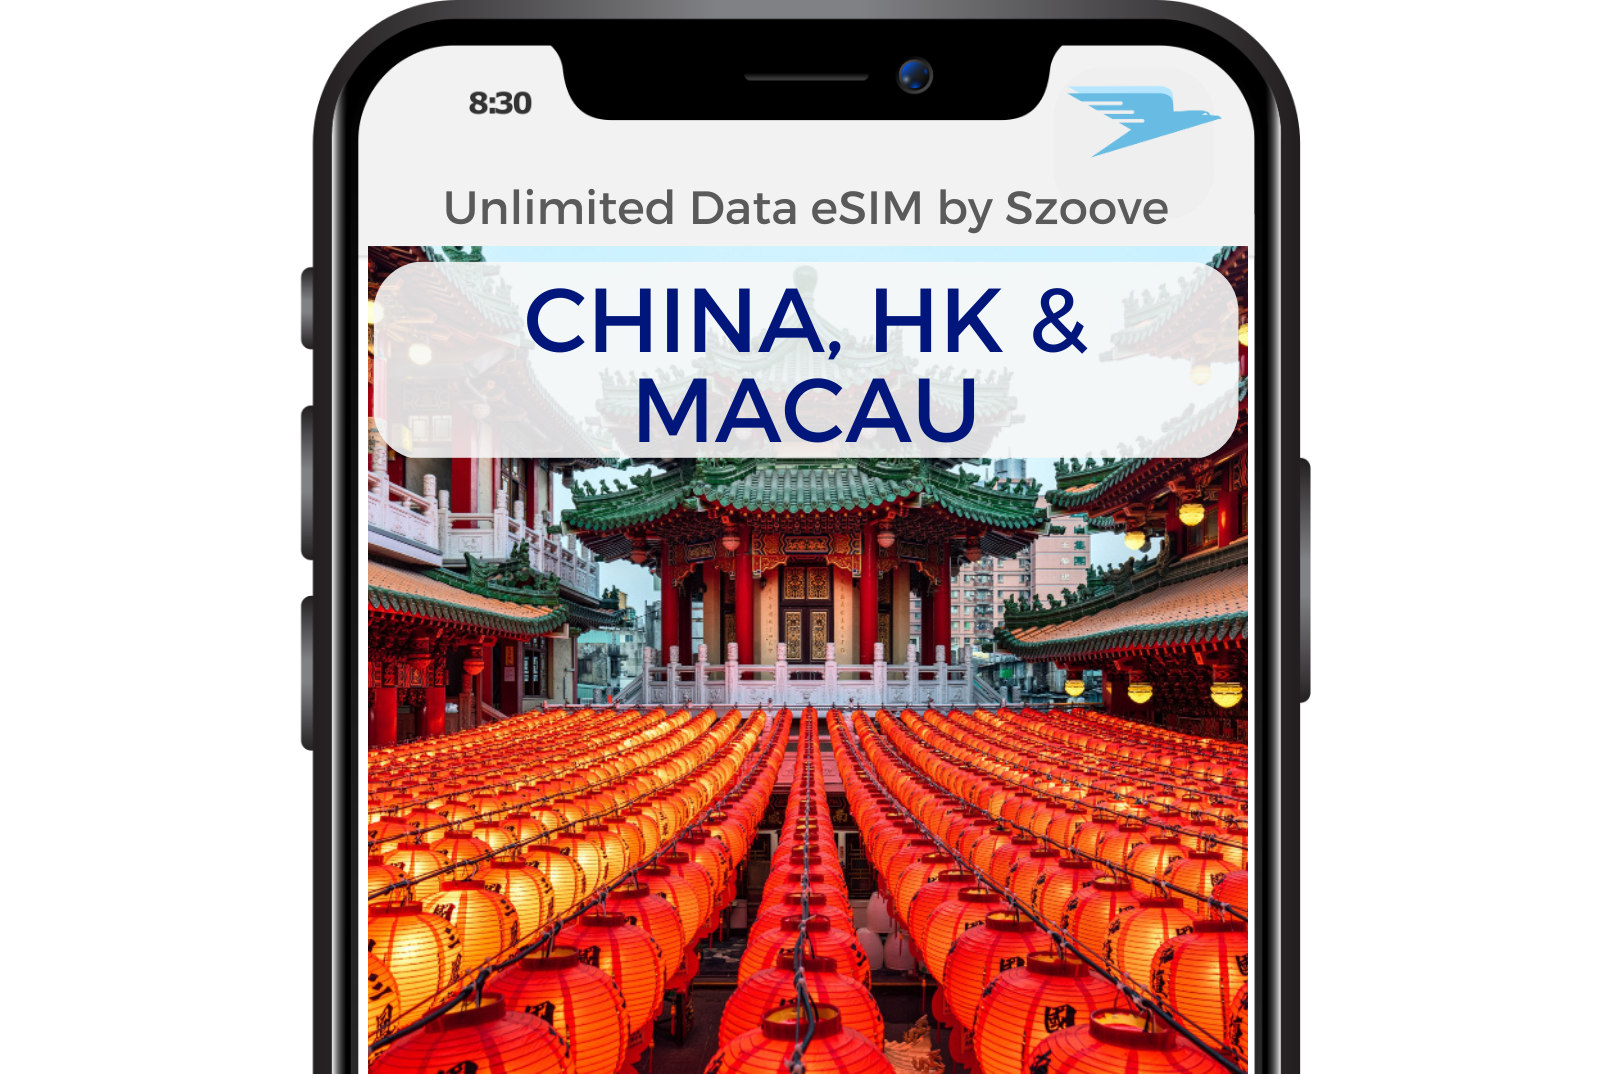 中國＆香港＆澳門每日 1GB 無限流量限速 eSIM 卡